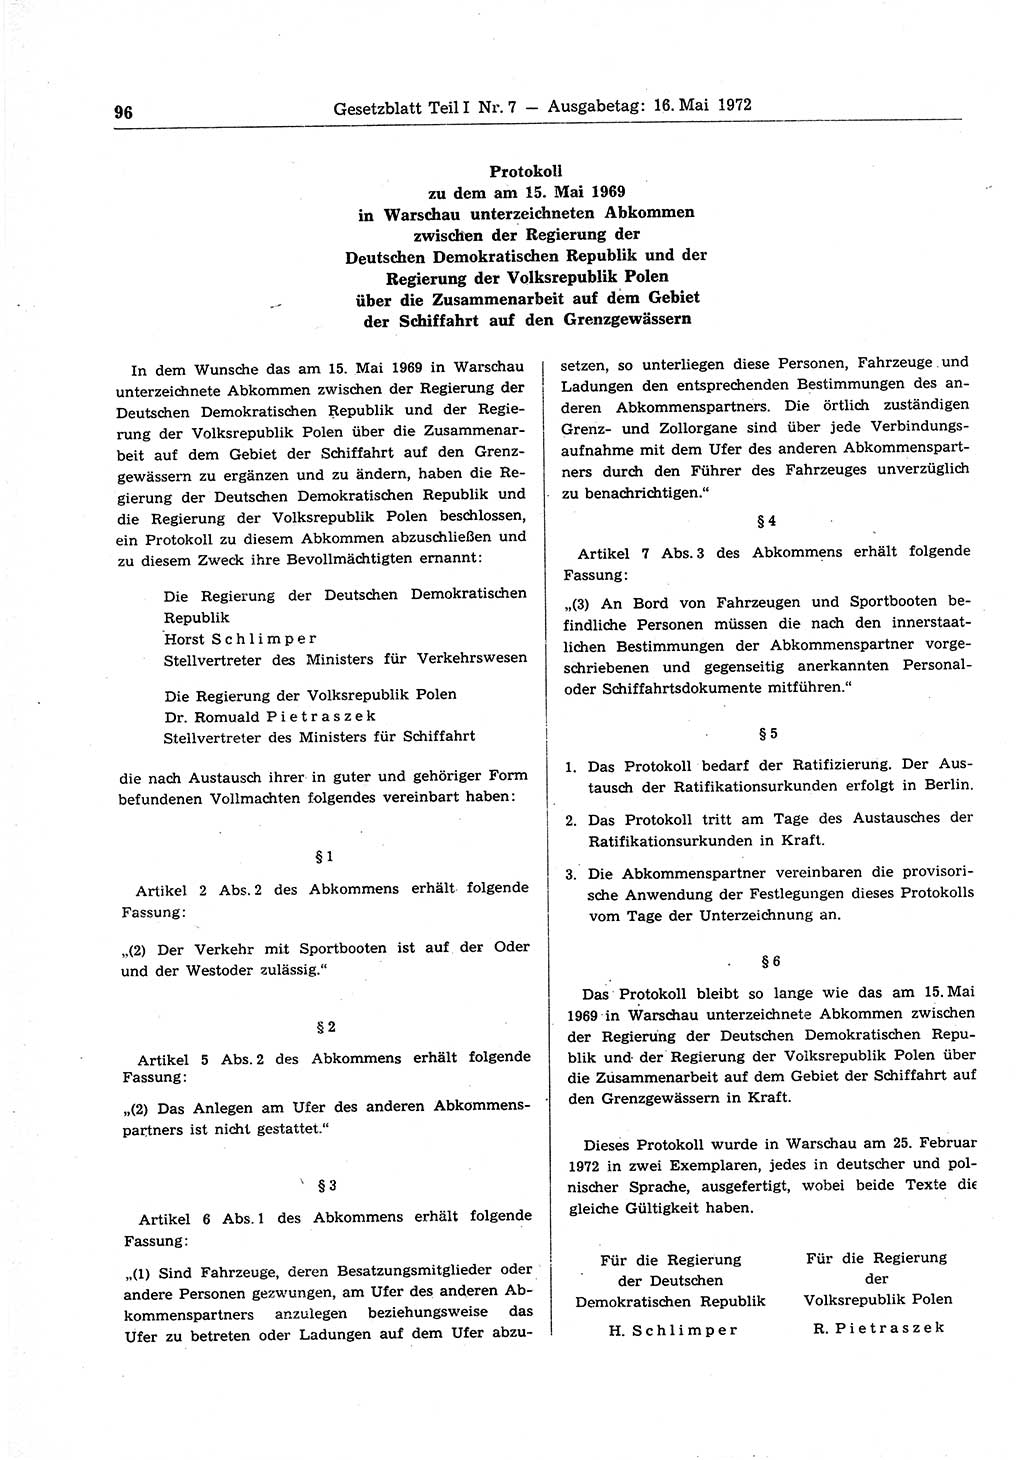 Gesetzblatt (GBl.) der Deutschen Demokratischen Republik (DDR) Teil Ⅰ 1972, Seite 96 (GBl. DDR Ⅰ 1972, S. 96)